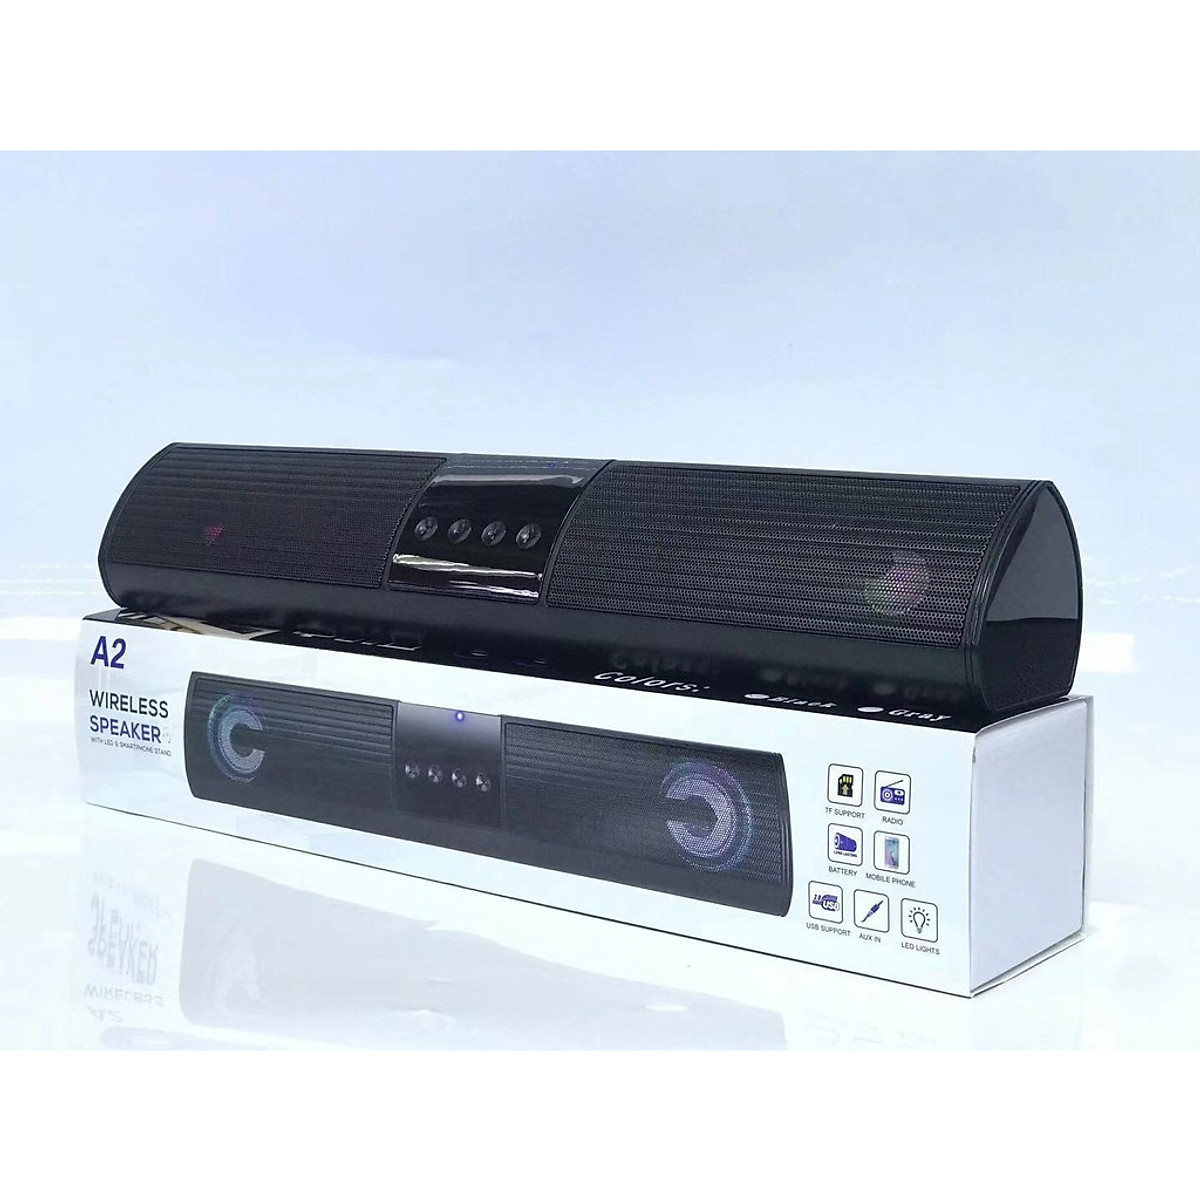 Loa bluetooth speaker ROYALMIC A2 dáng dài 2 loa cực đỉnh –  Kiểu dáng sang trọng hỗ trợ thẻ nhớ, đài FM - Hàng chính hãng